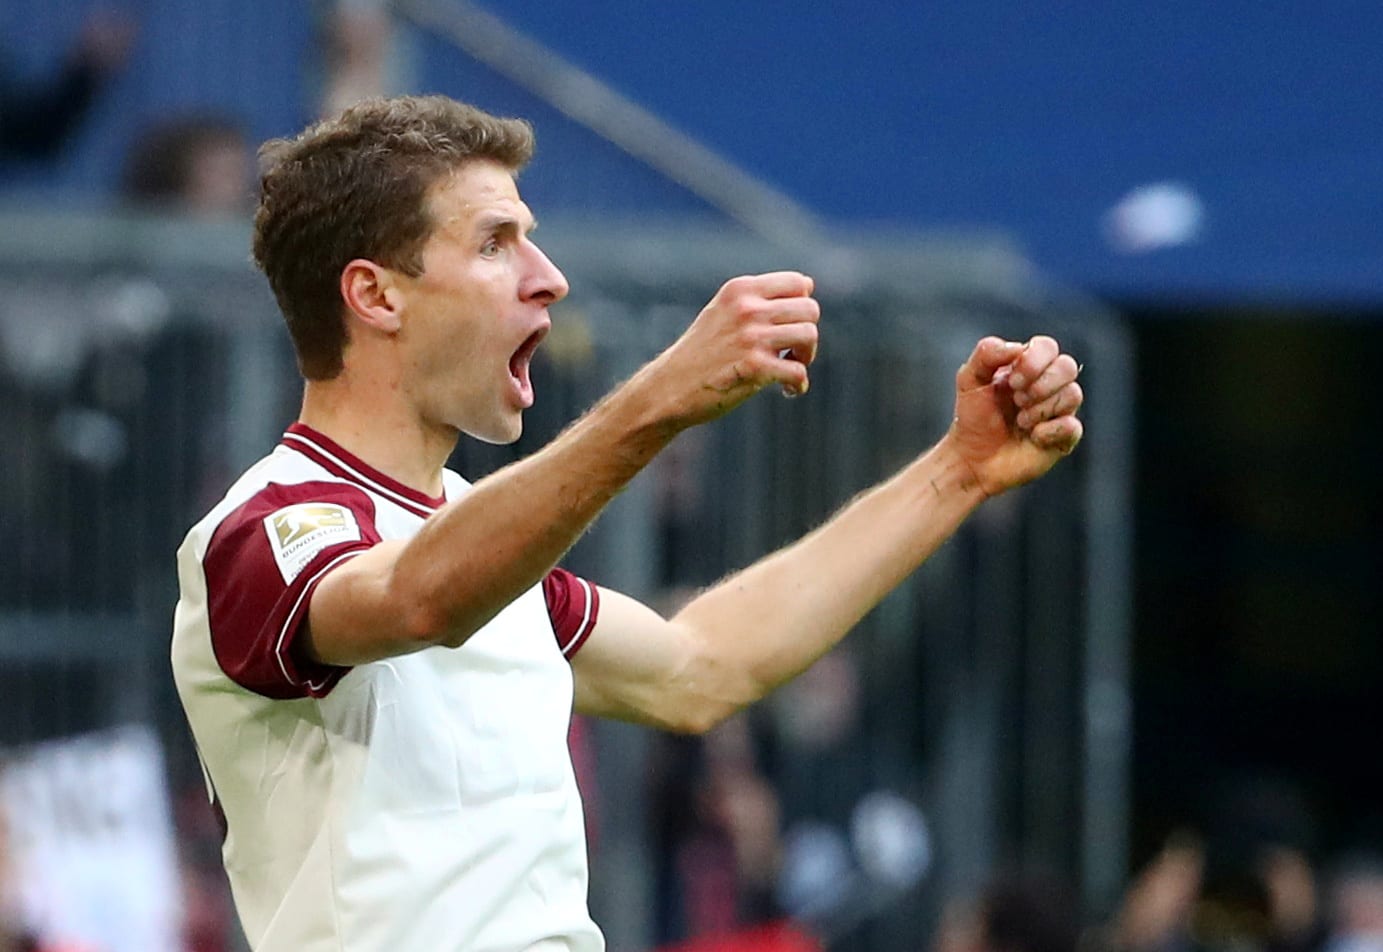 Müller wil seizoen afmaken: 'Desnoods in quarantaine'